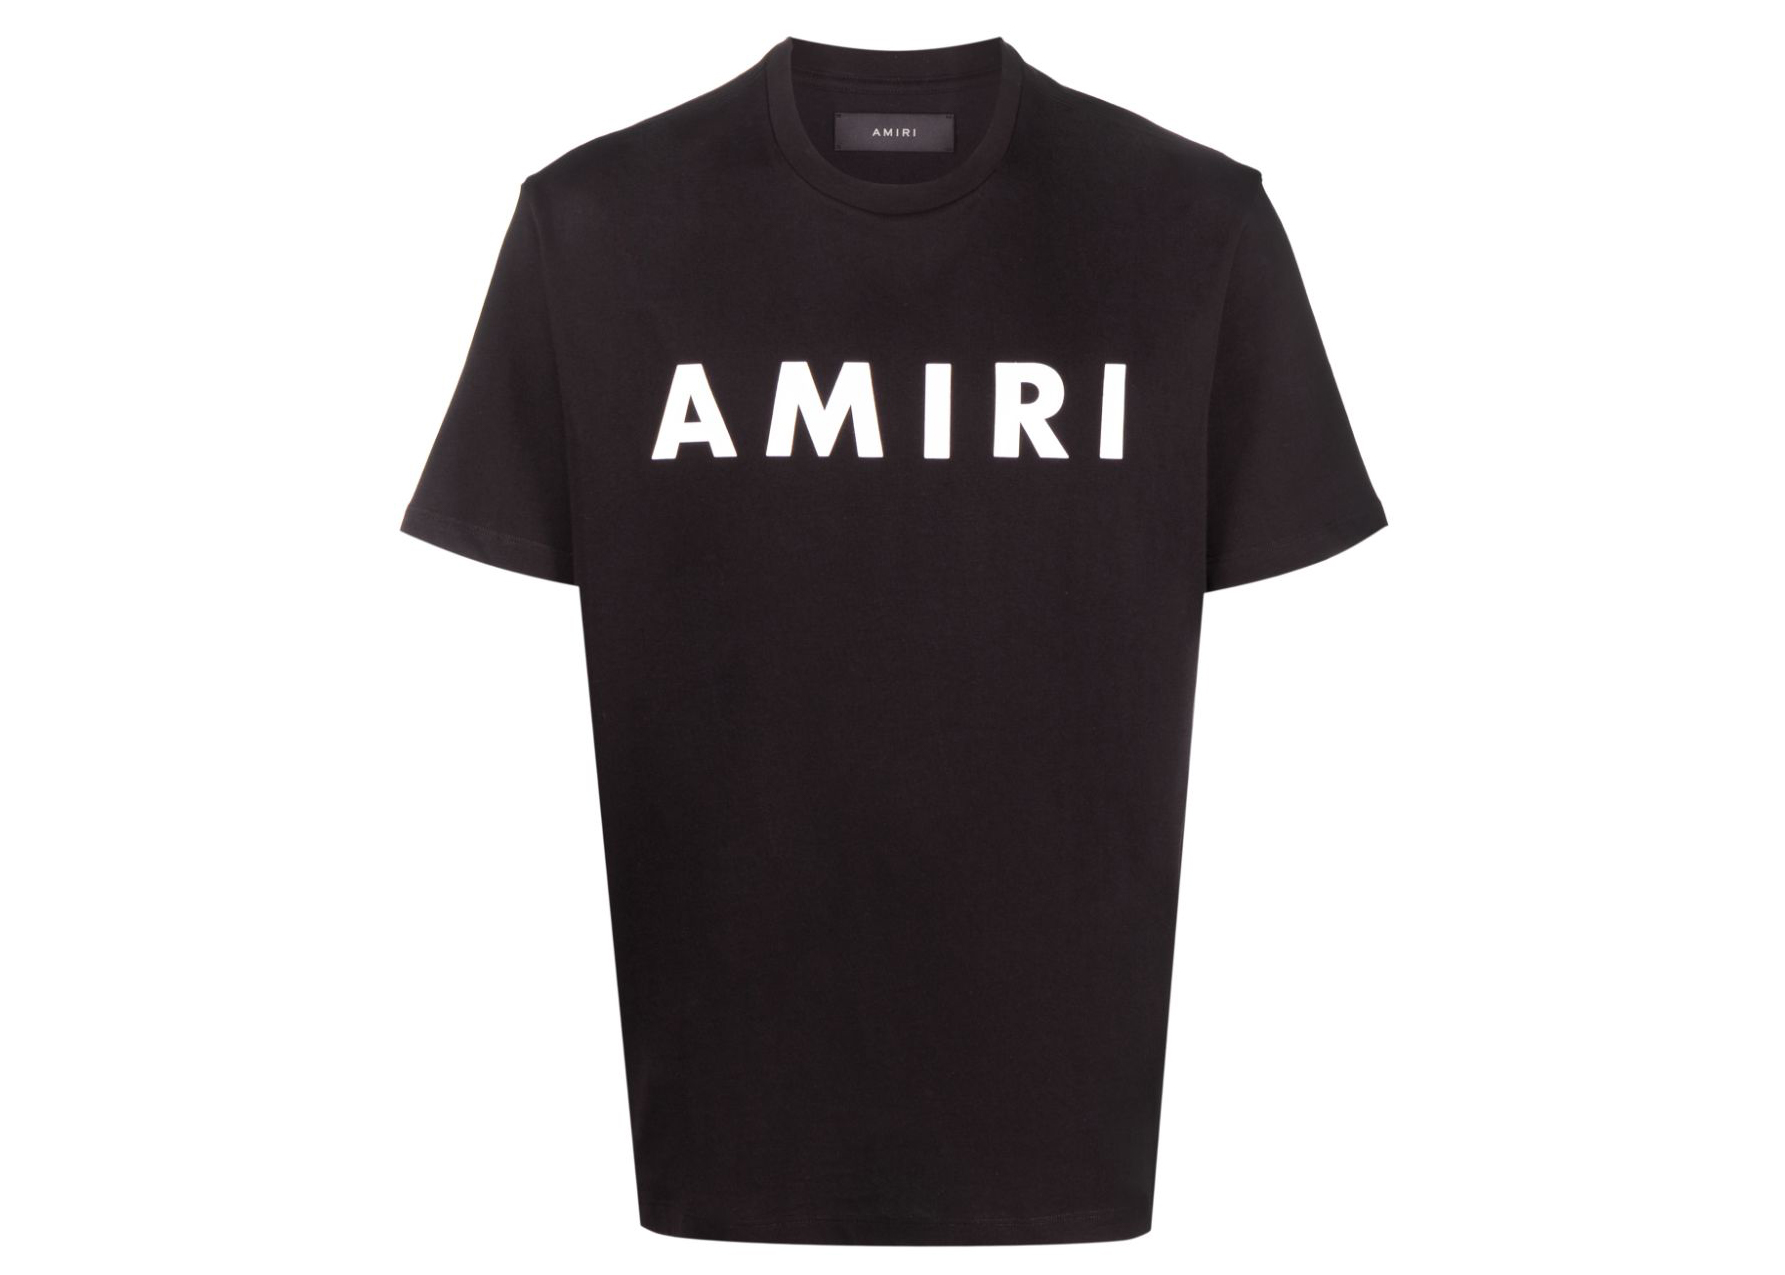 AMIRI Logo Print T-Shirt Black